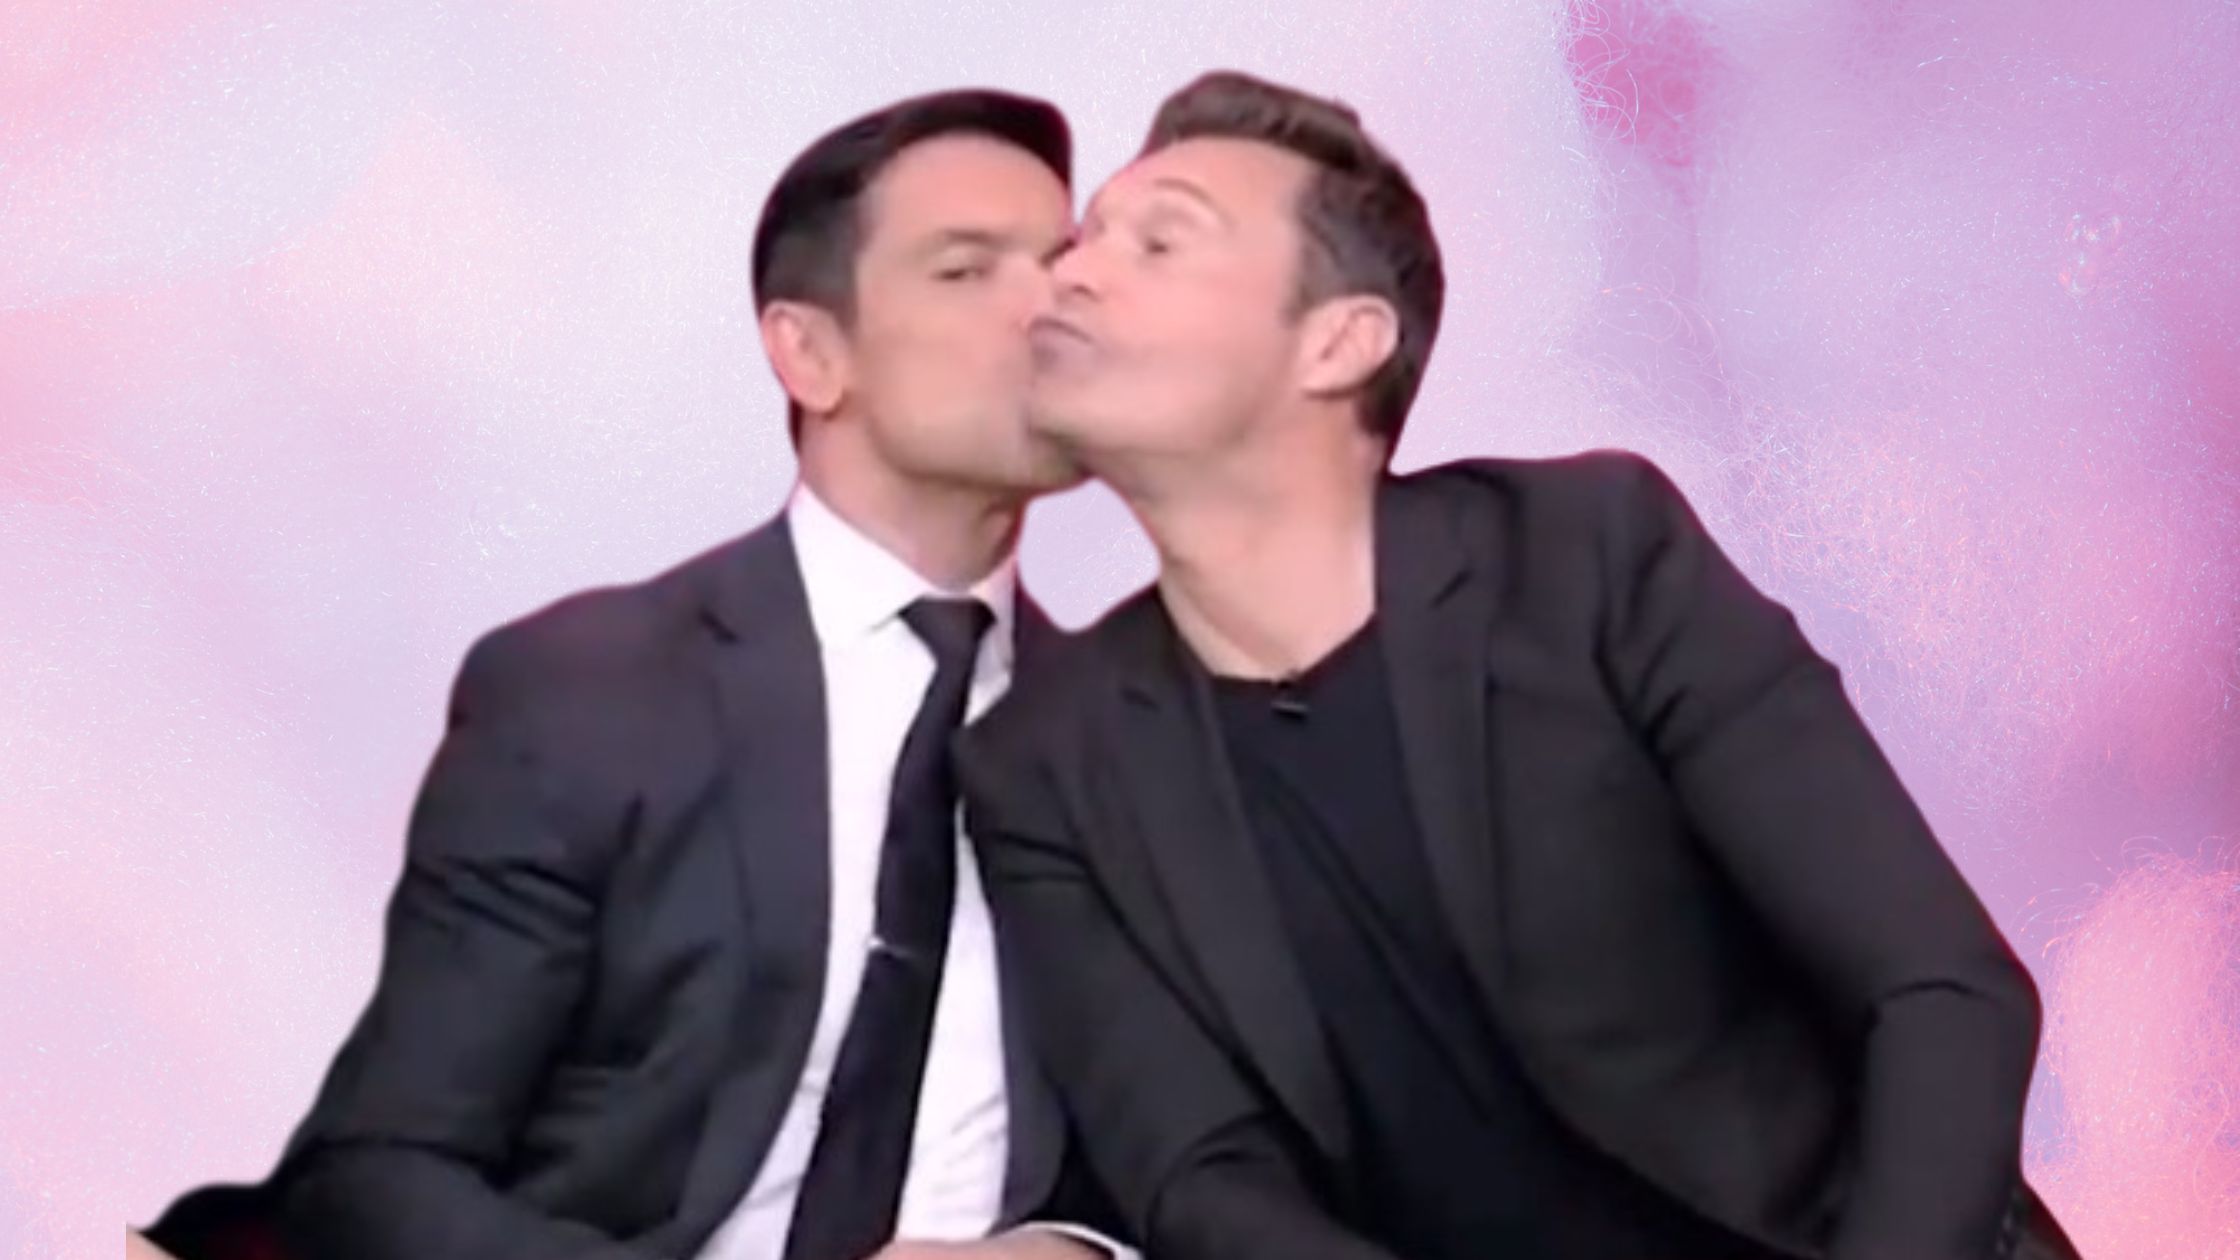 Ryan Seacrest Kissing Men